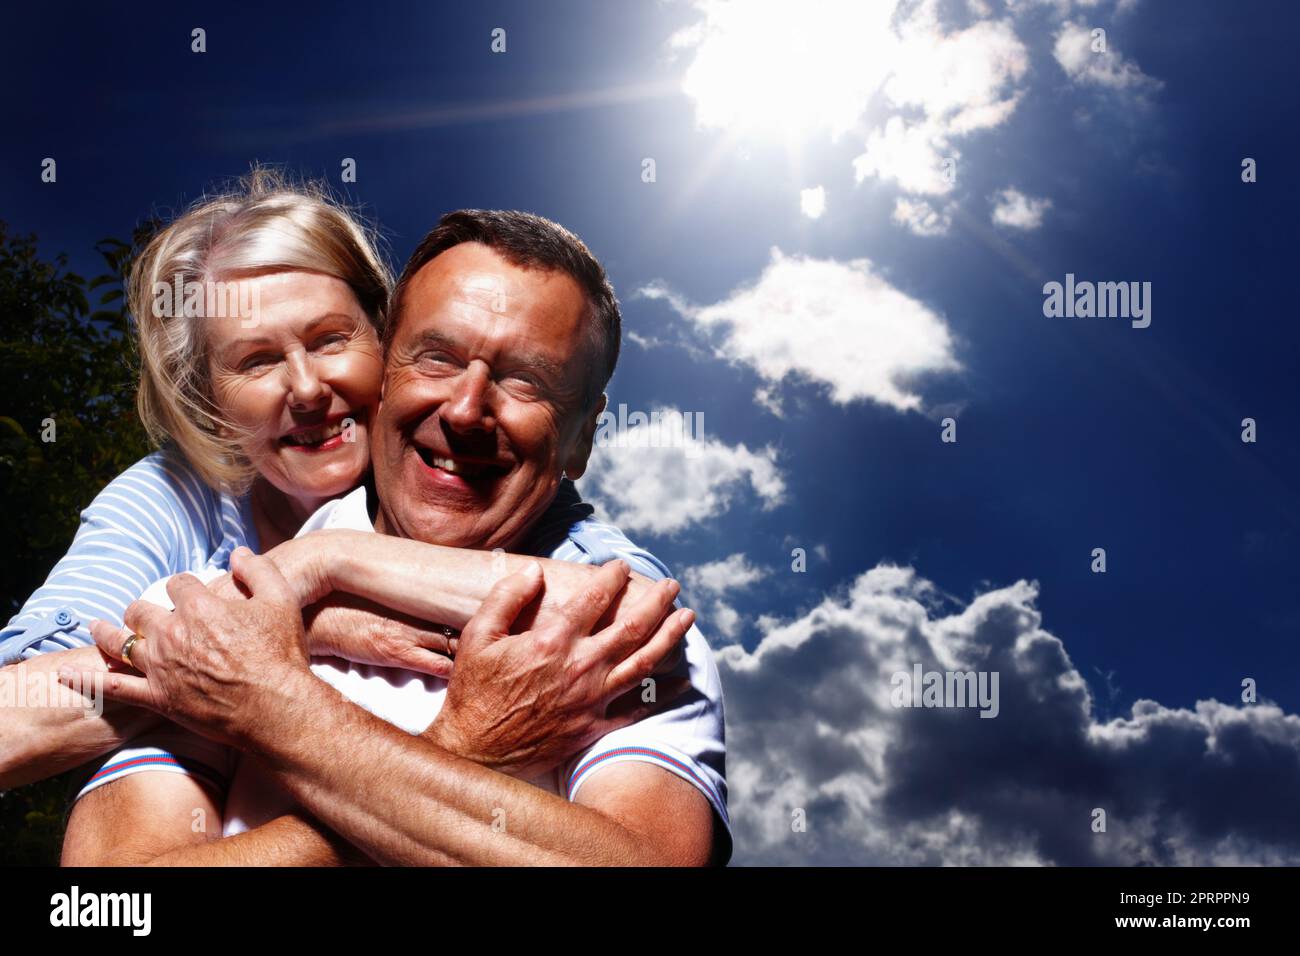 Ältere Frau umarmte den Mann von hinten gegen den wolkigen Himmel. Porträt einer hübschen Frau, die ihren Mann von hinten gegen den wolkigen Himmel umarmt. Stockfoto